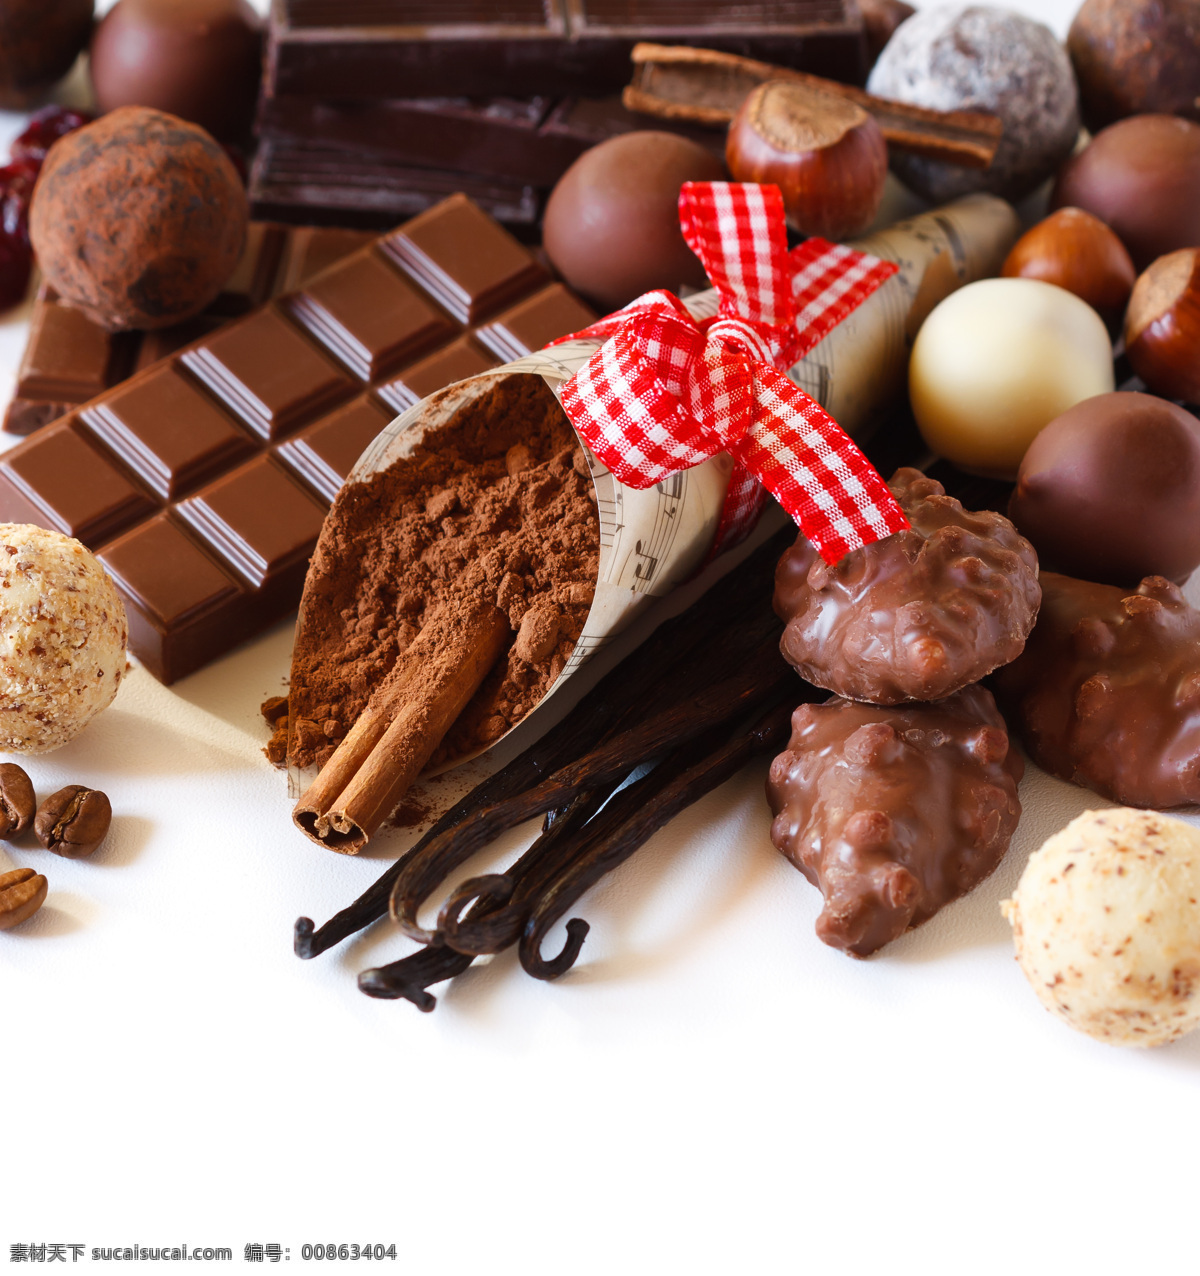 巧克力粉 糖果 巧克力 背景 朱古力 巧克力美食 巧克力糖 美味 美食图片 餐饮美食